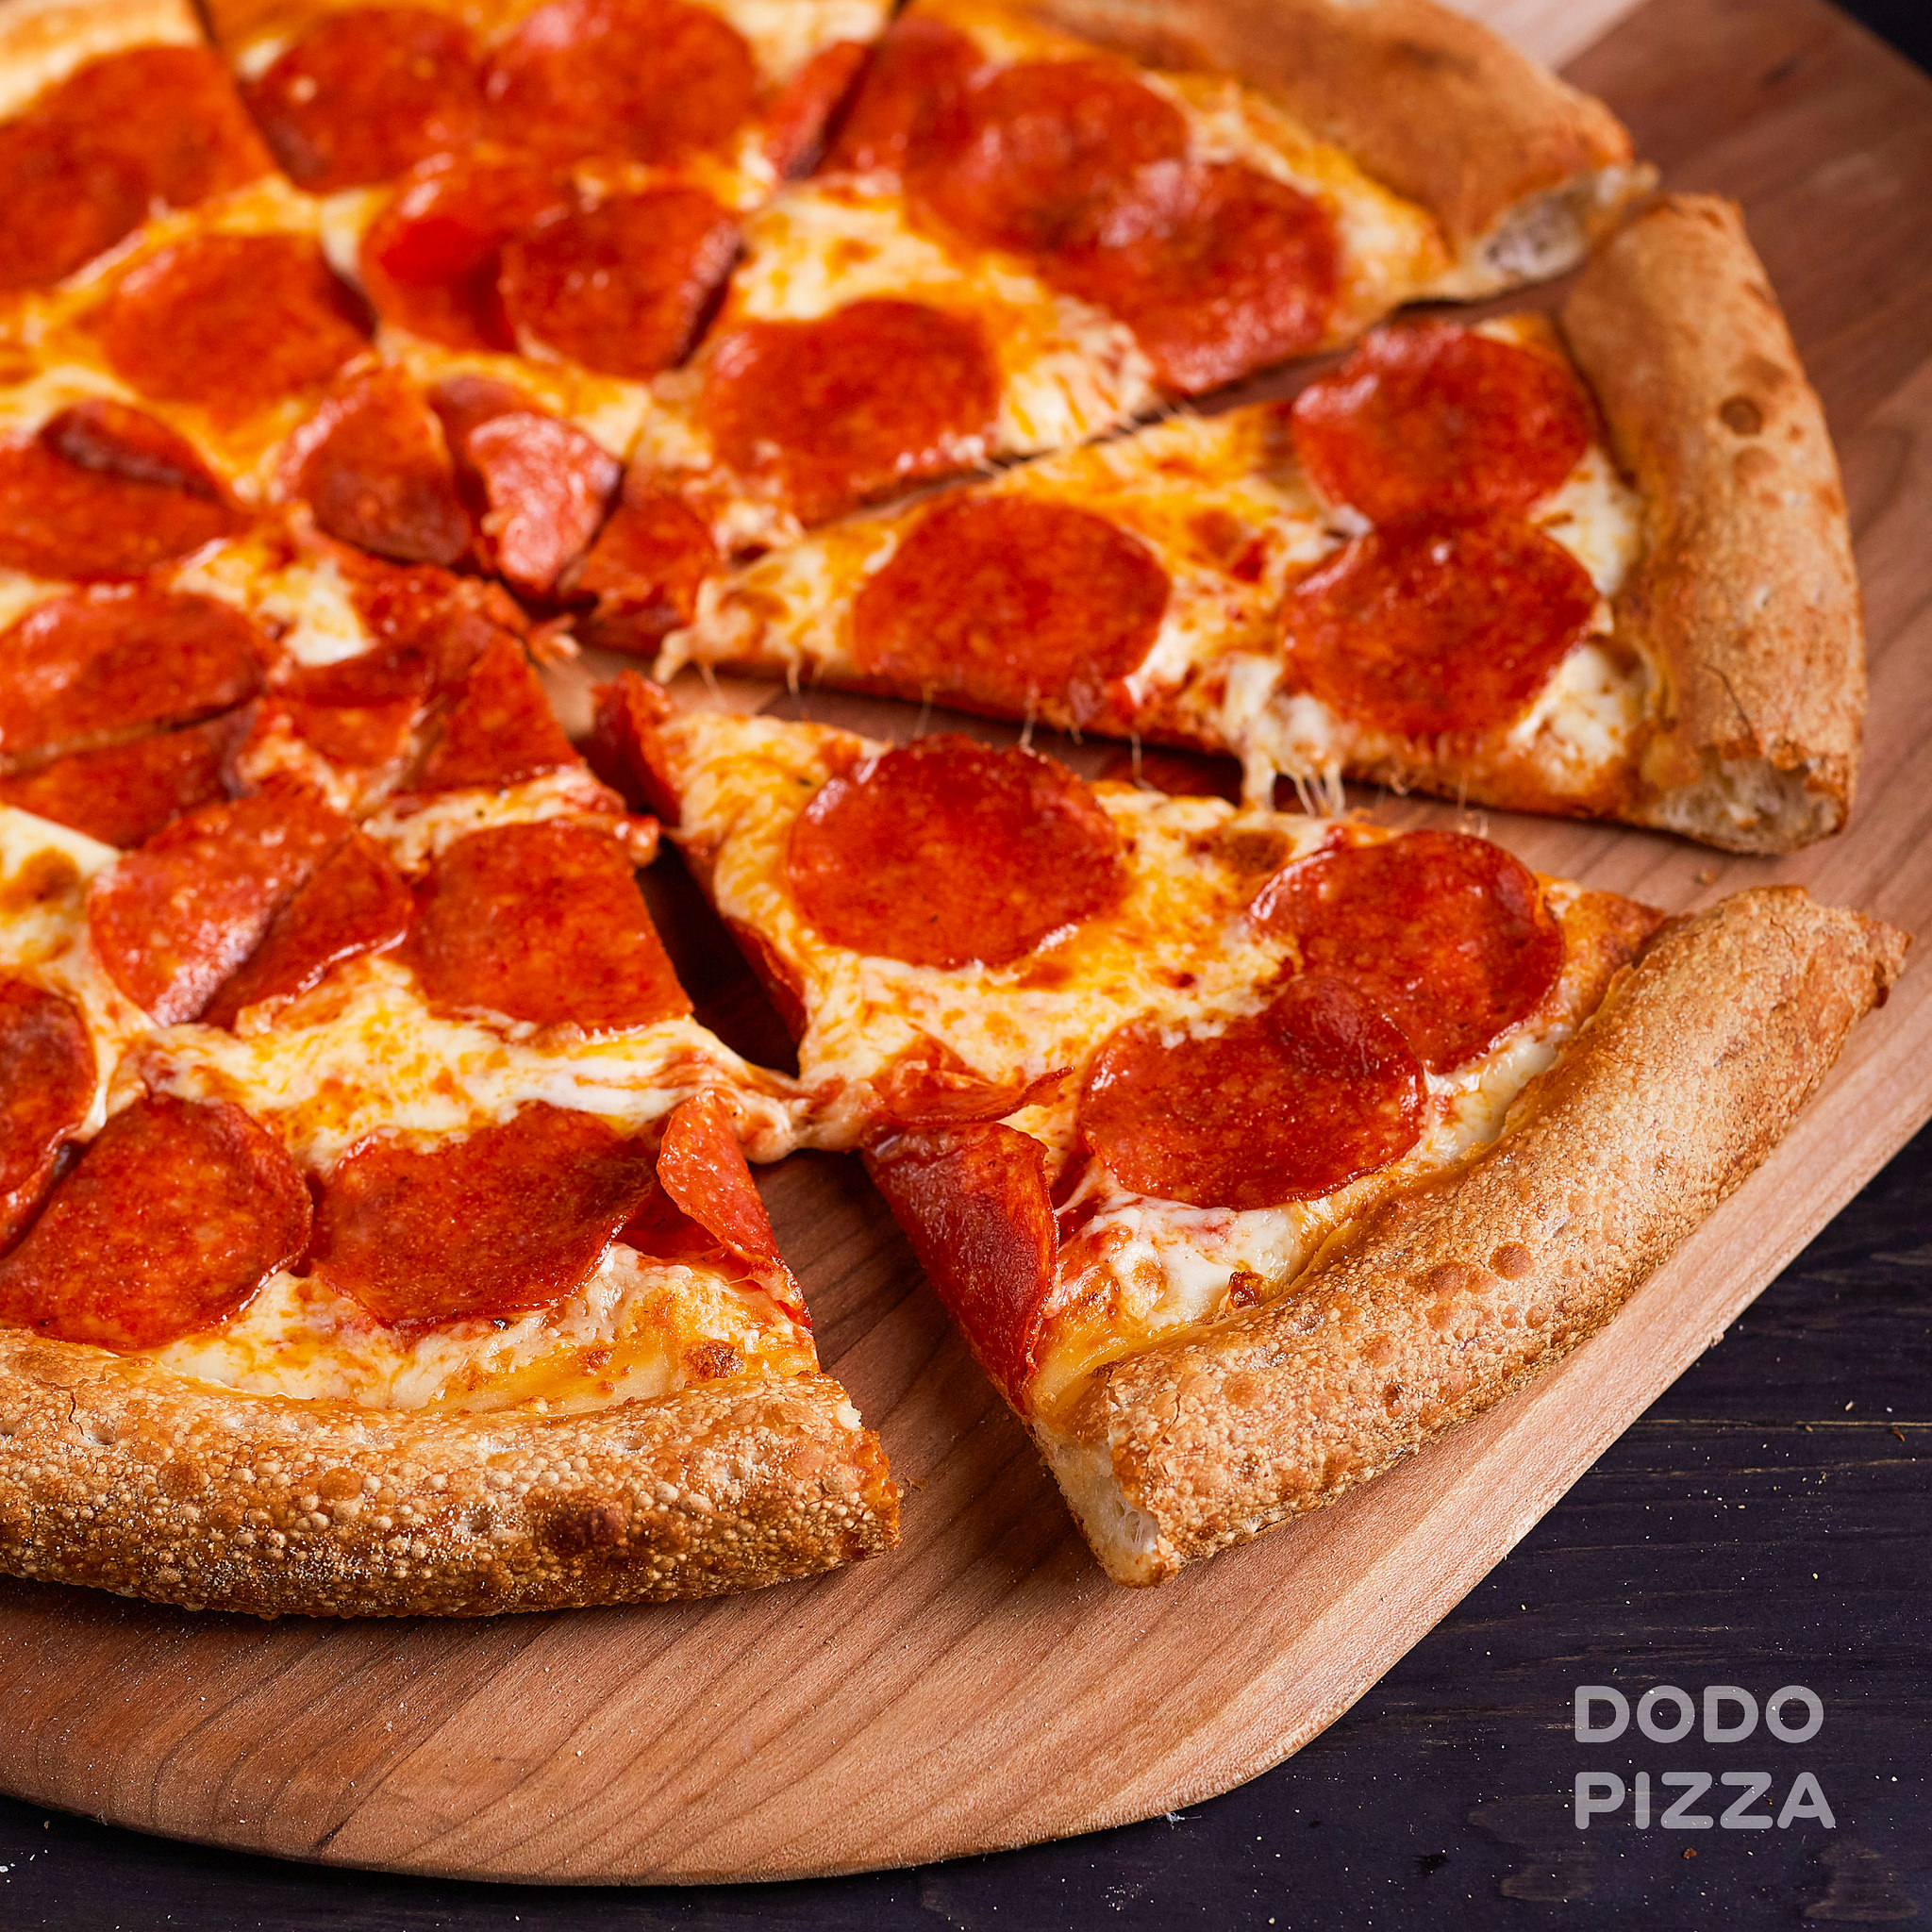 сколько стоит маленькая пицца пепперони в додо пицца фото 3